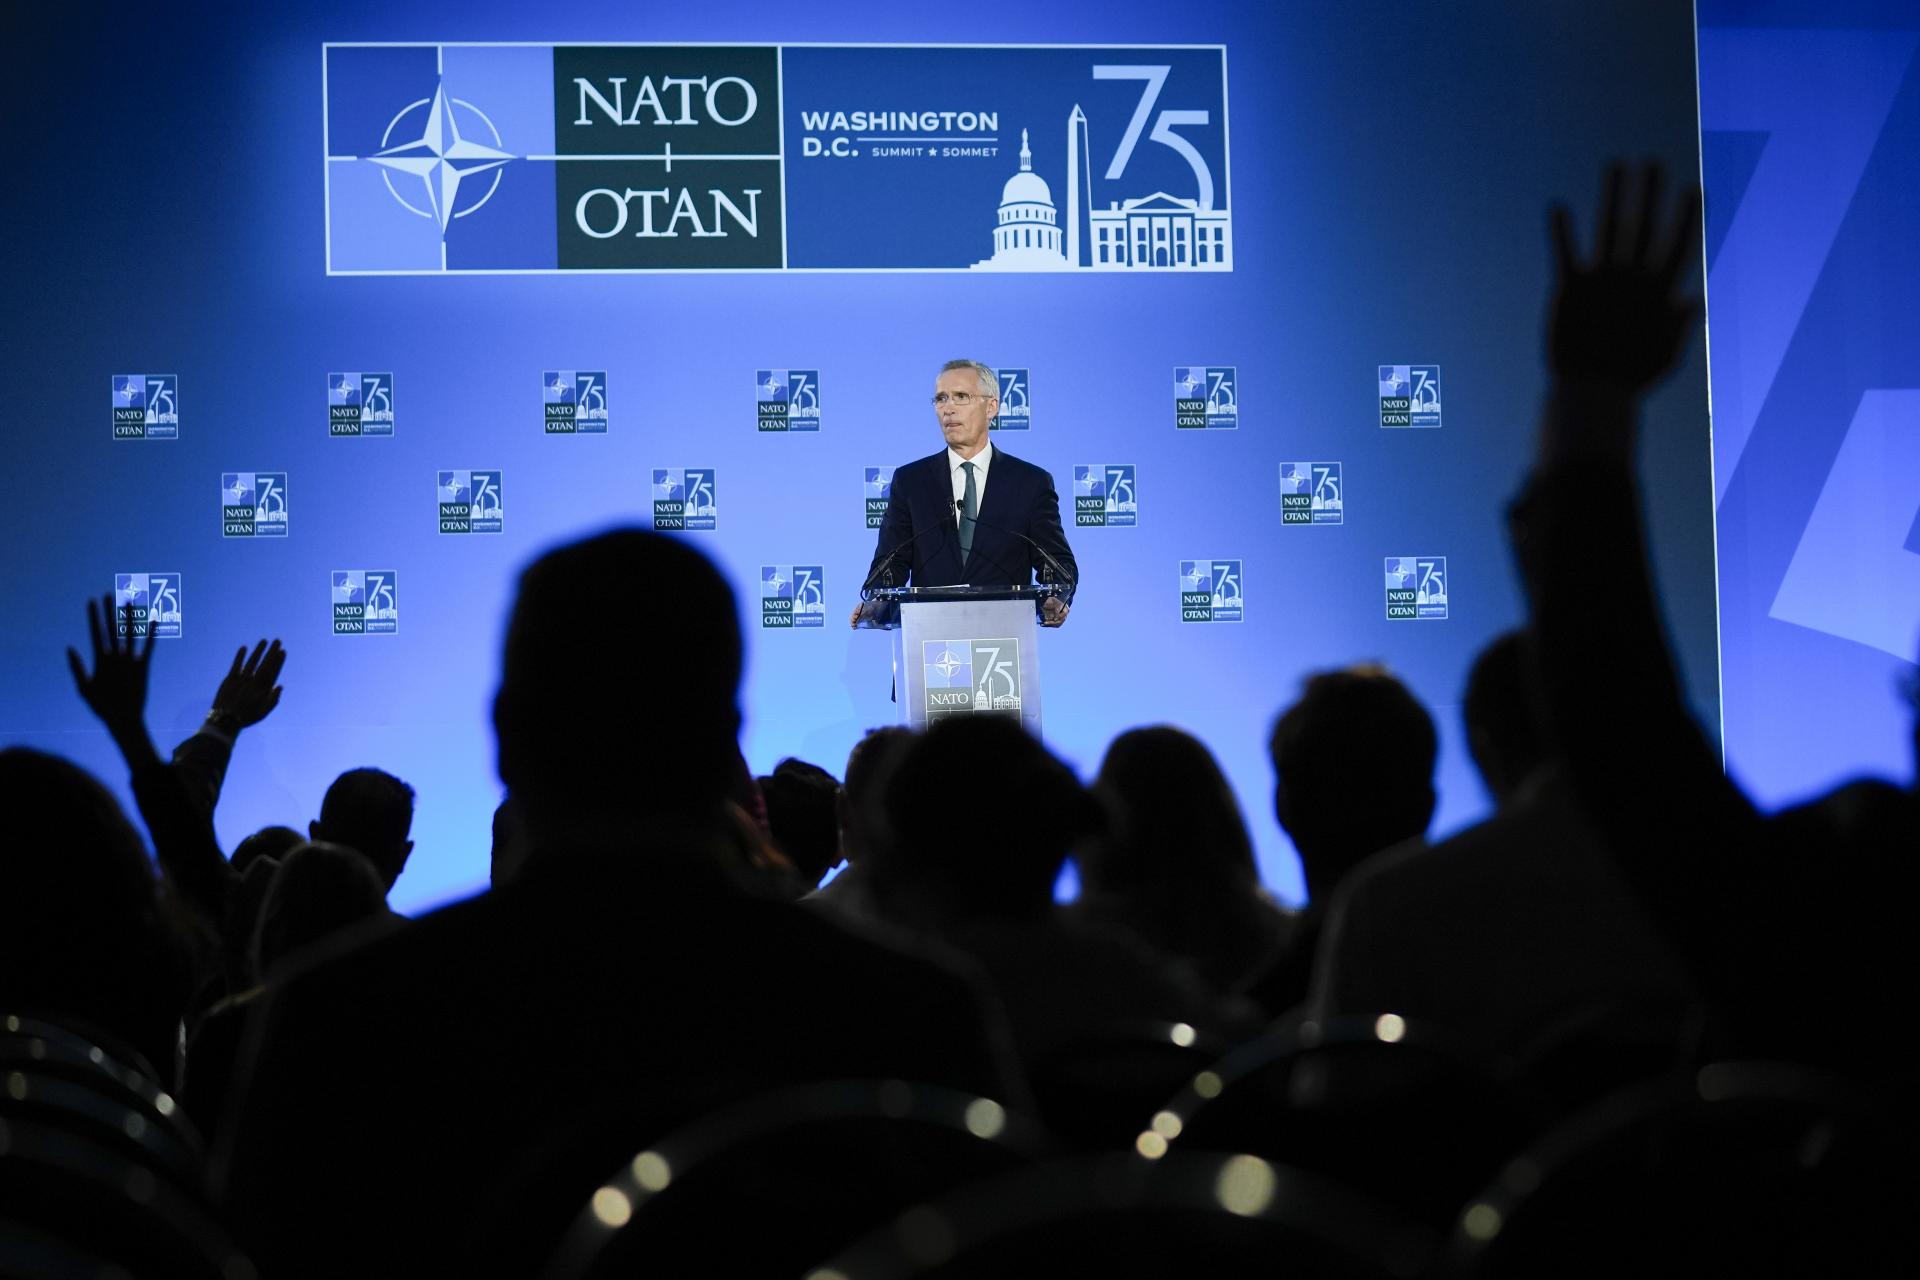 Zbrane Rusku neposkytujeme. Vyhlásenie summitu NATO je plné bojovnej rétoriky a lží, reaguje Čína